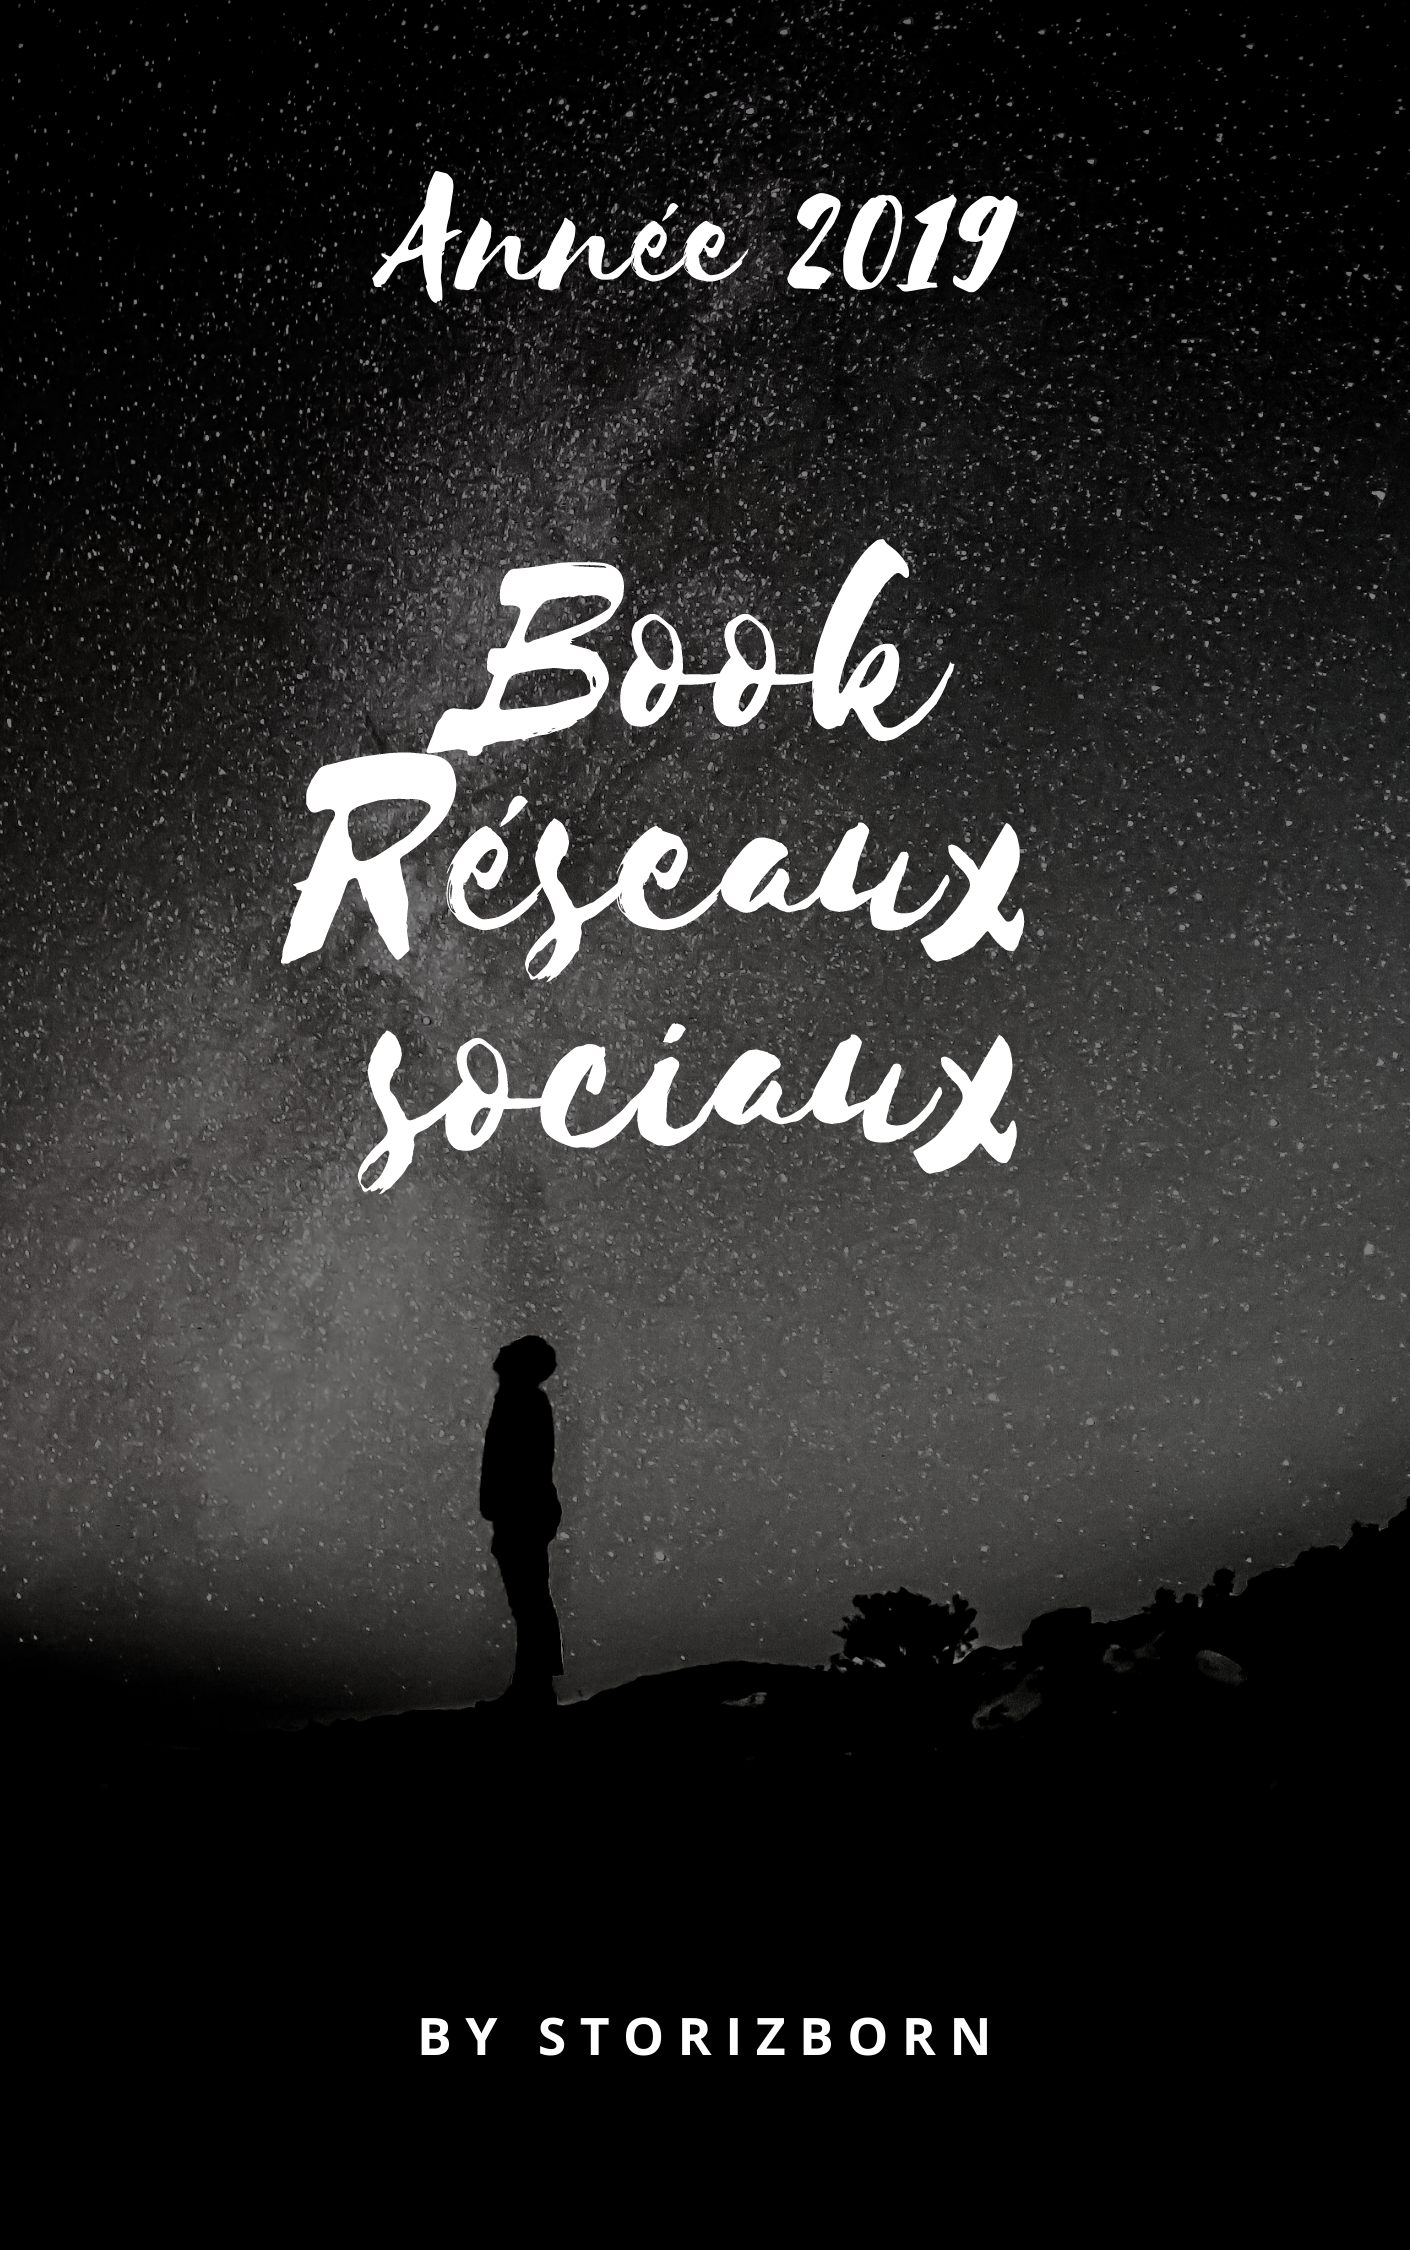  Book Reseaux sociaux - 2019